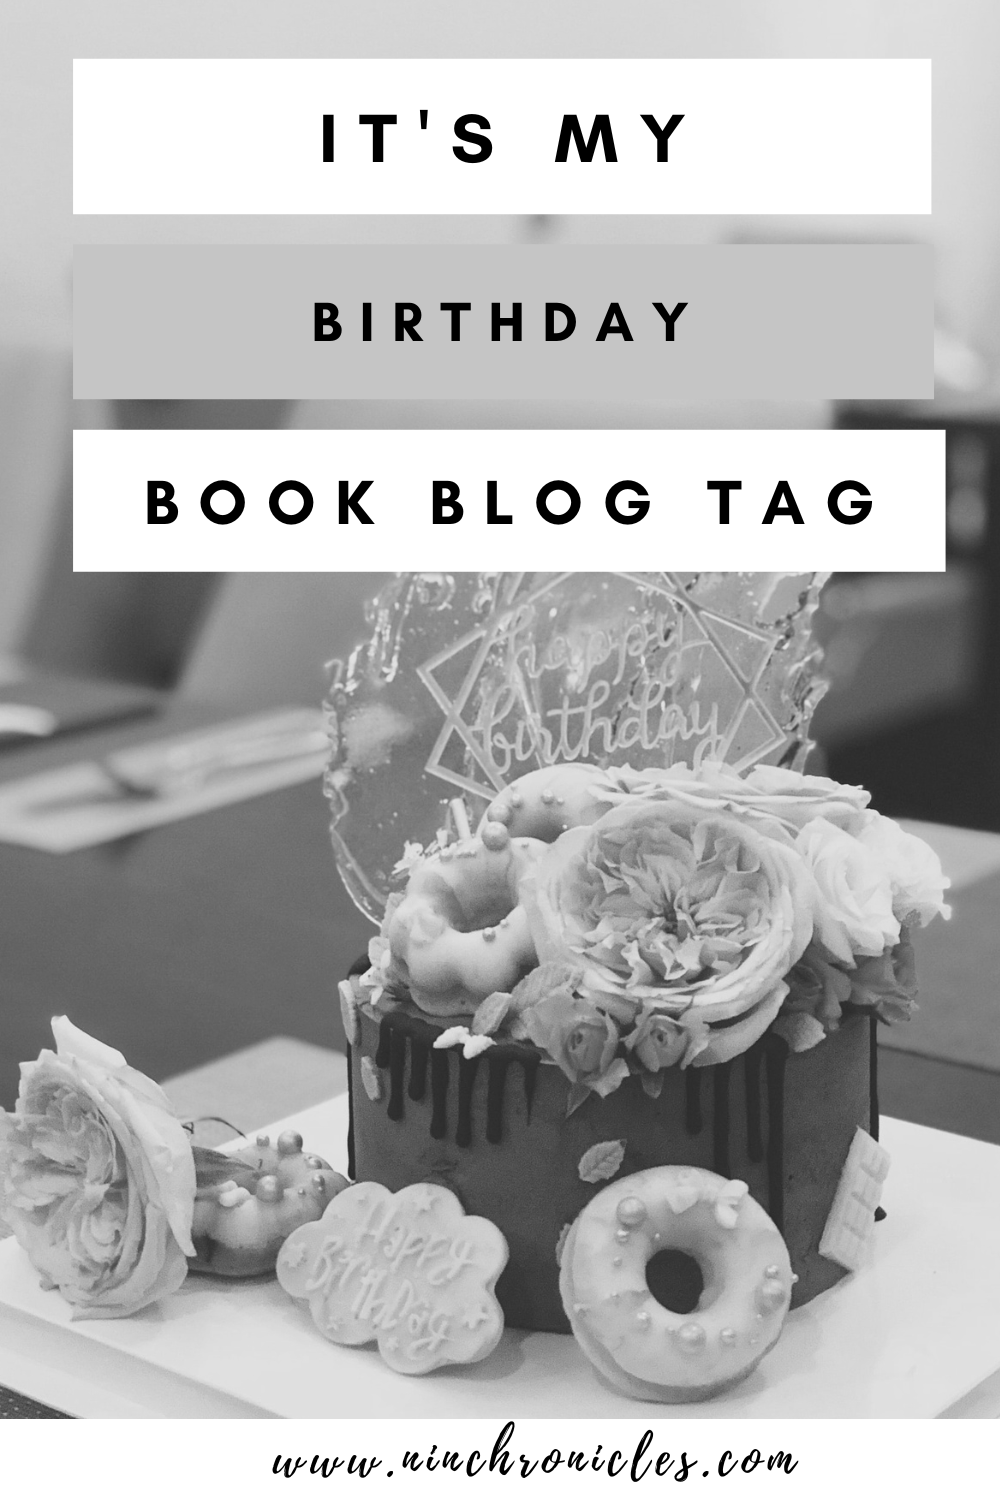 It's My Birthday Blog Tag